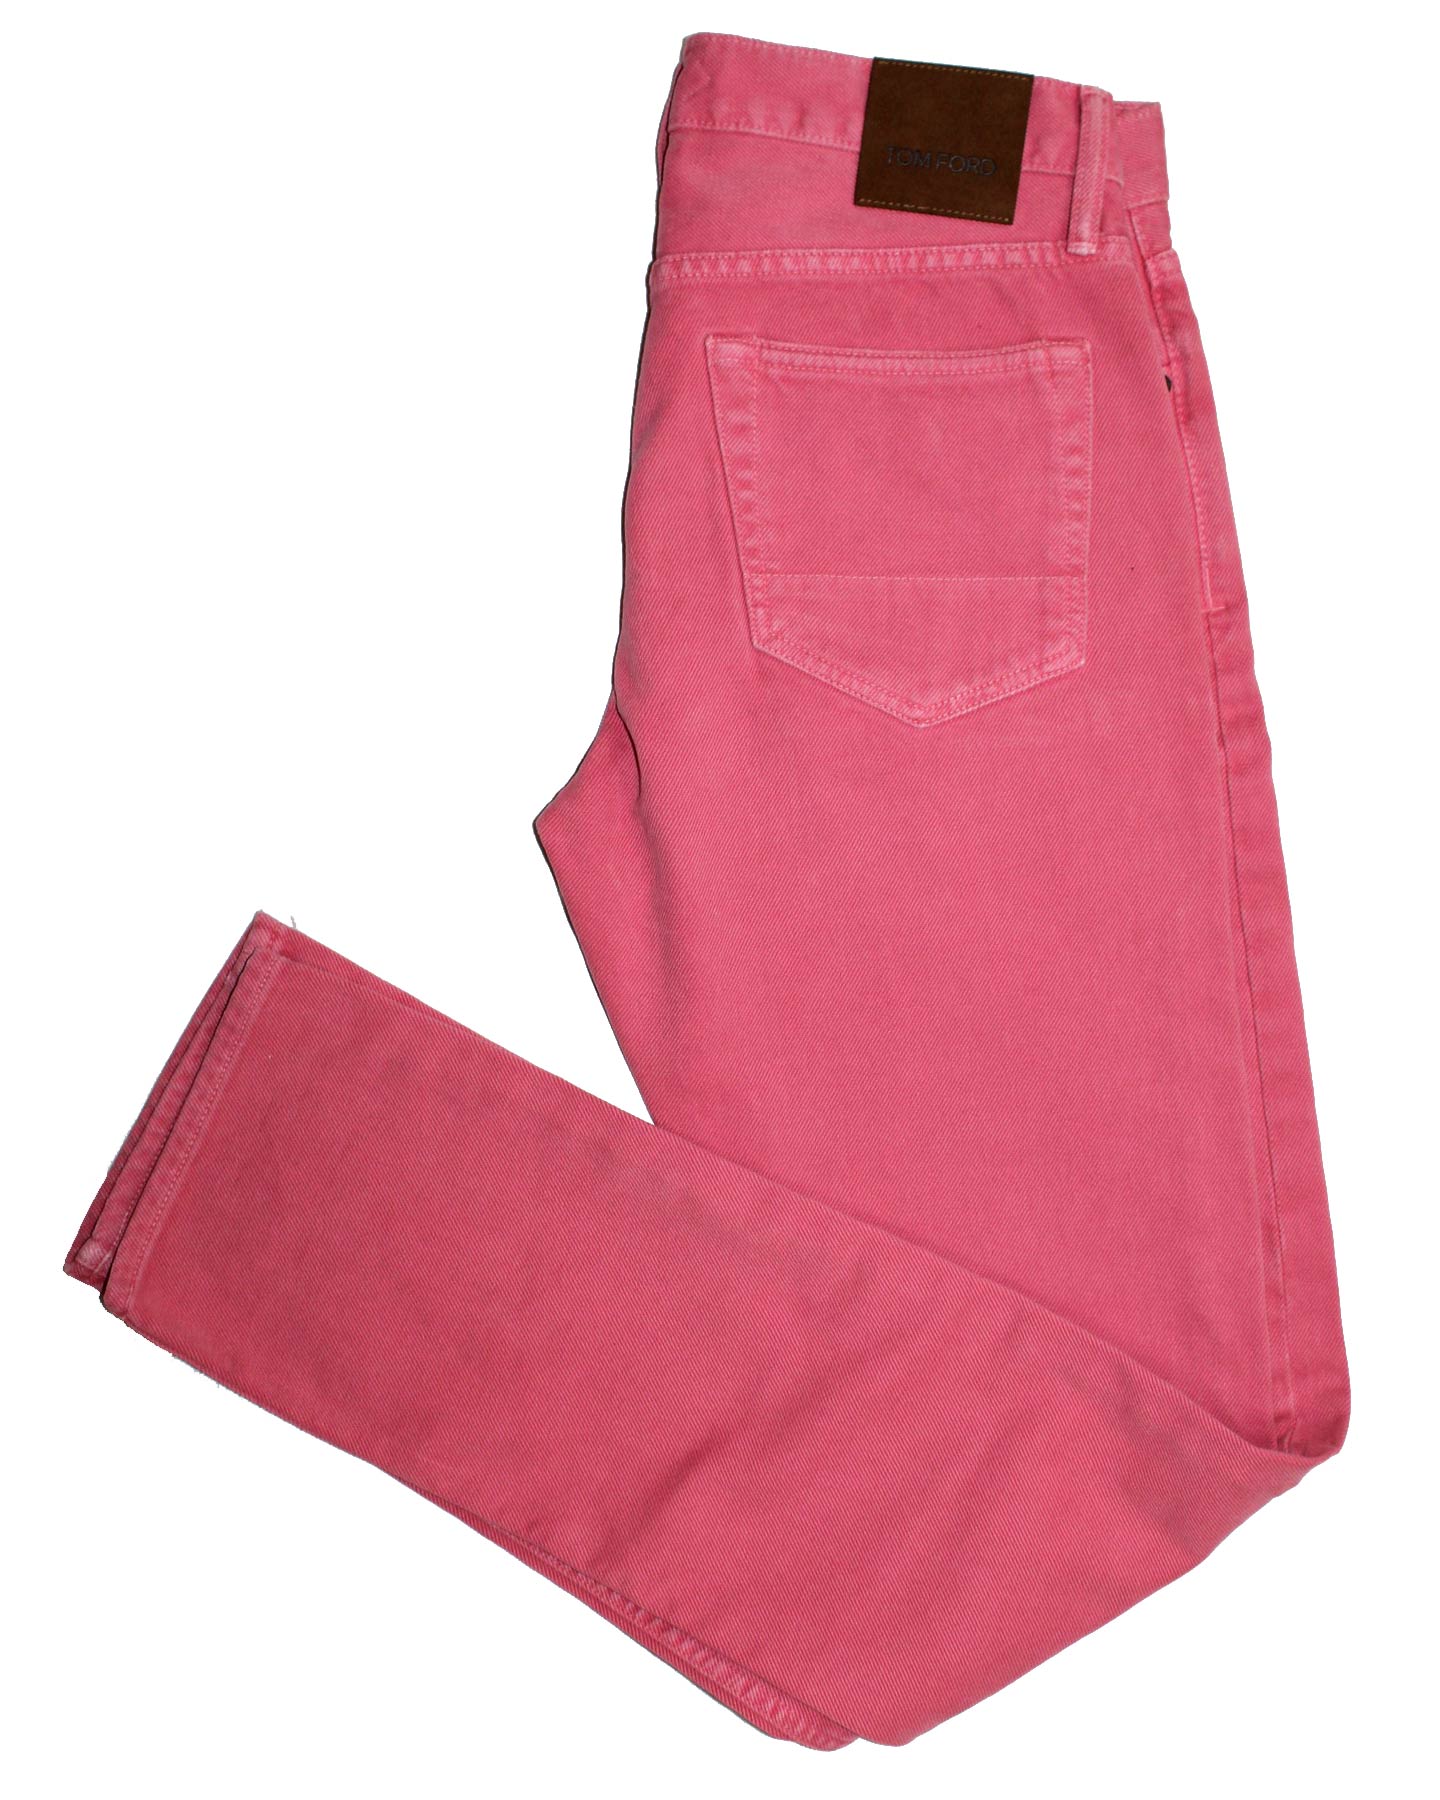 Tom Ford Pants Pink 31 Slim Fit - Tie Deals